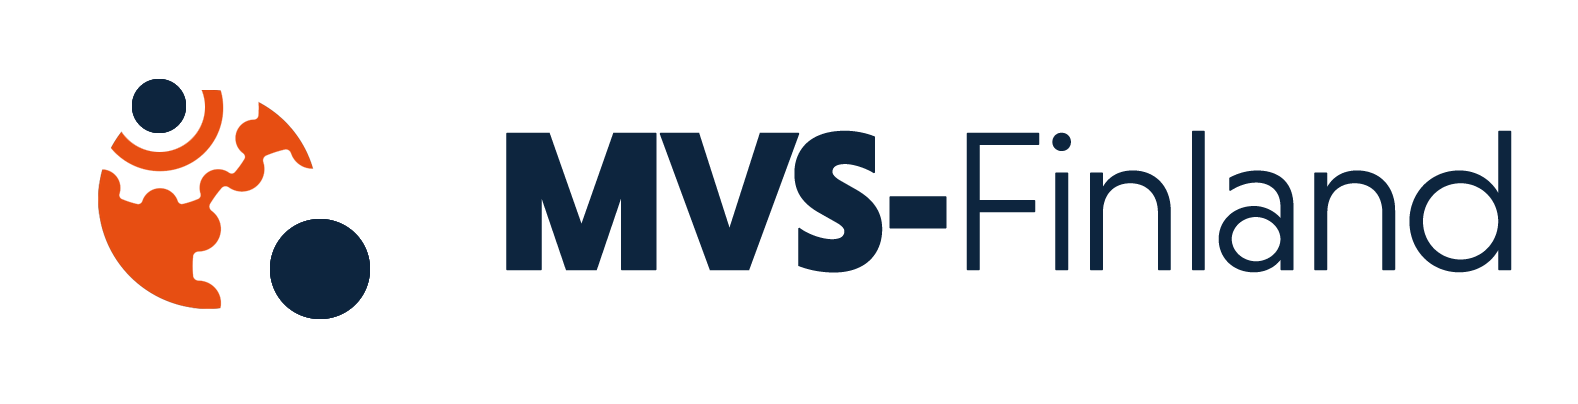 MVS-Finland